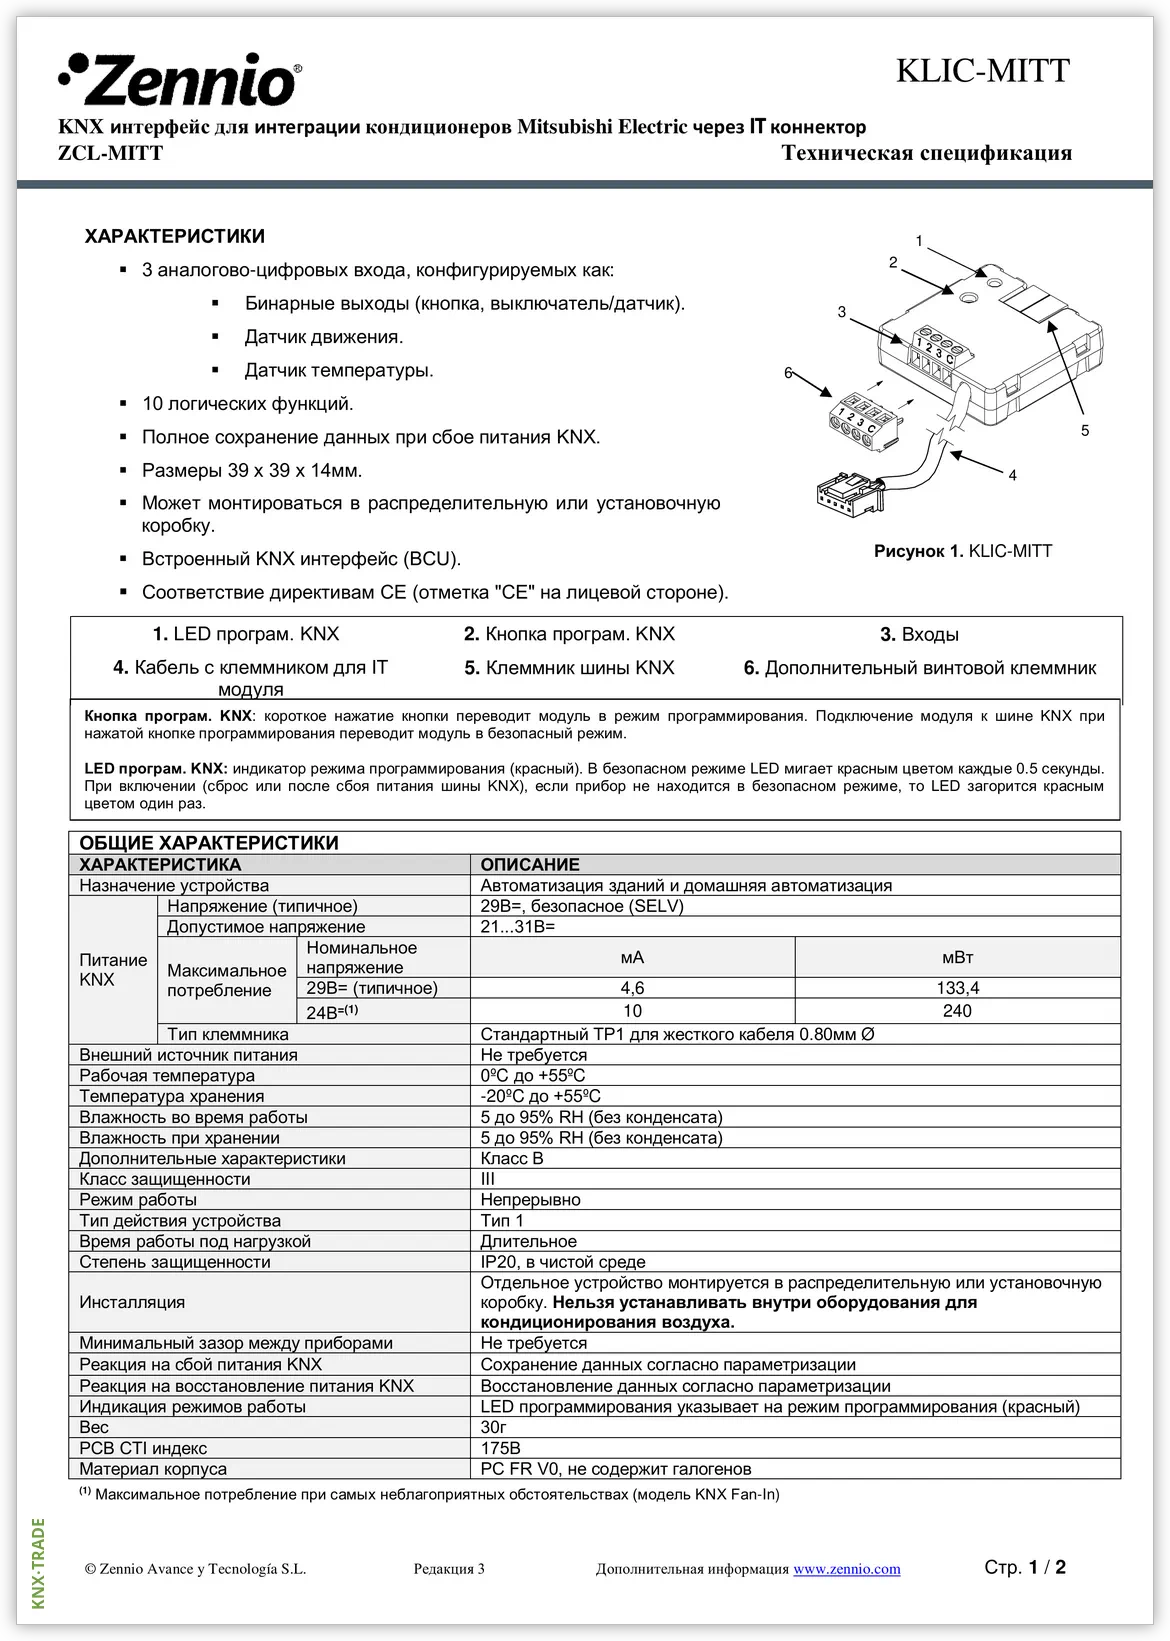 Datasheet (1) Zennio [ZCL-MITT] KLIC-MITT / Шлюз KNX-Mitsubishi Electric